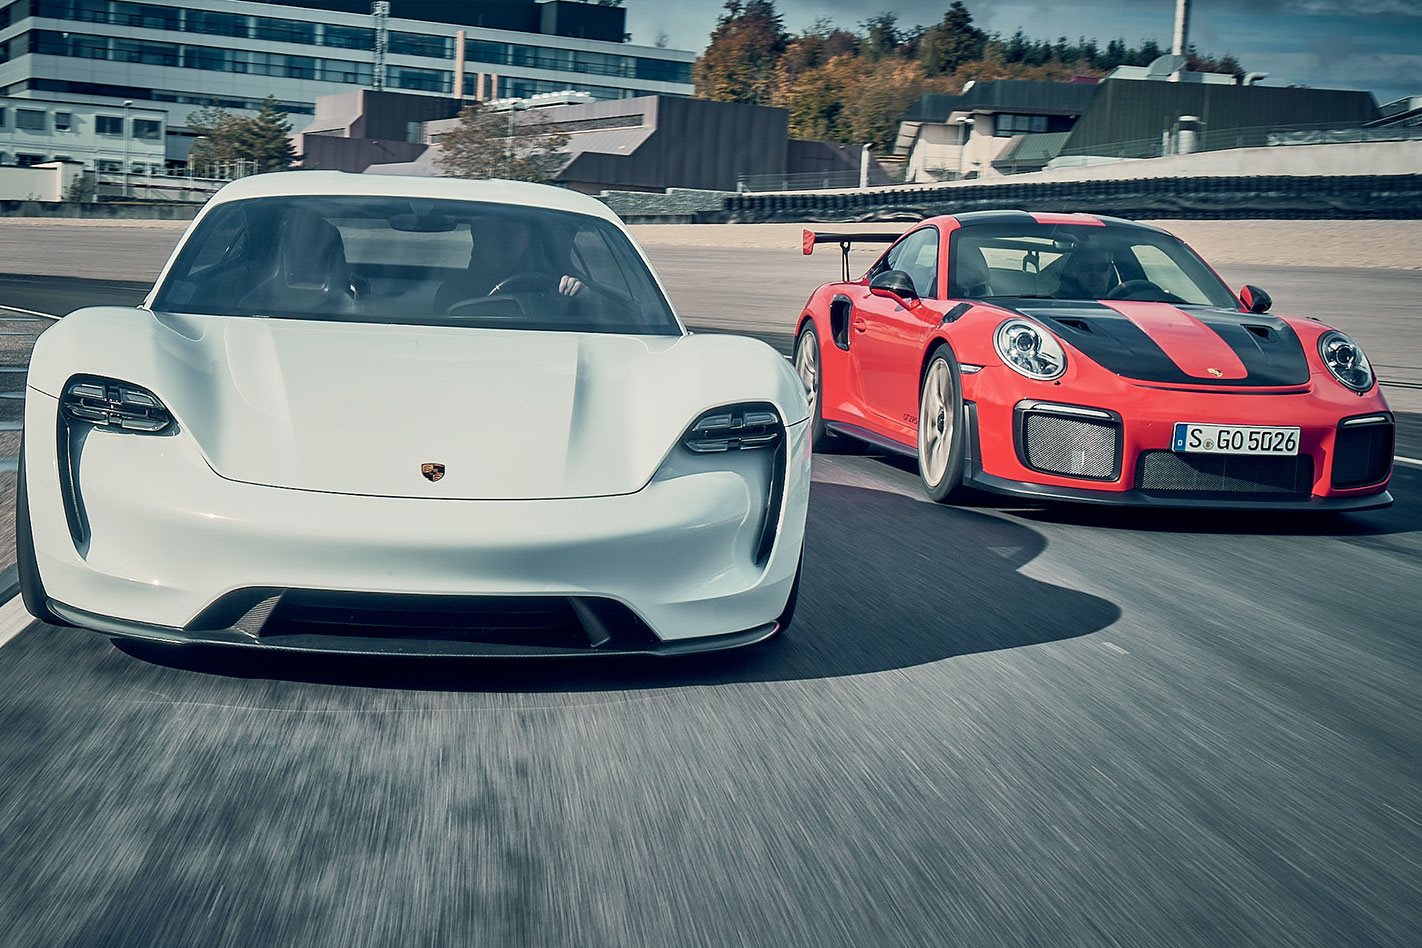 2018-Porsche-911-GT2-RS-vs-Porsche-Mission-E-Concept-comparison-drive